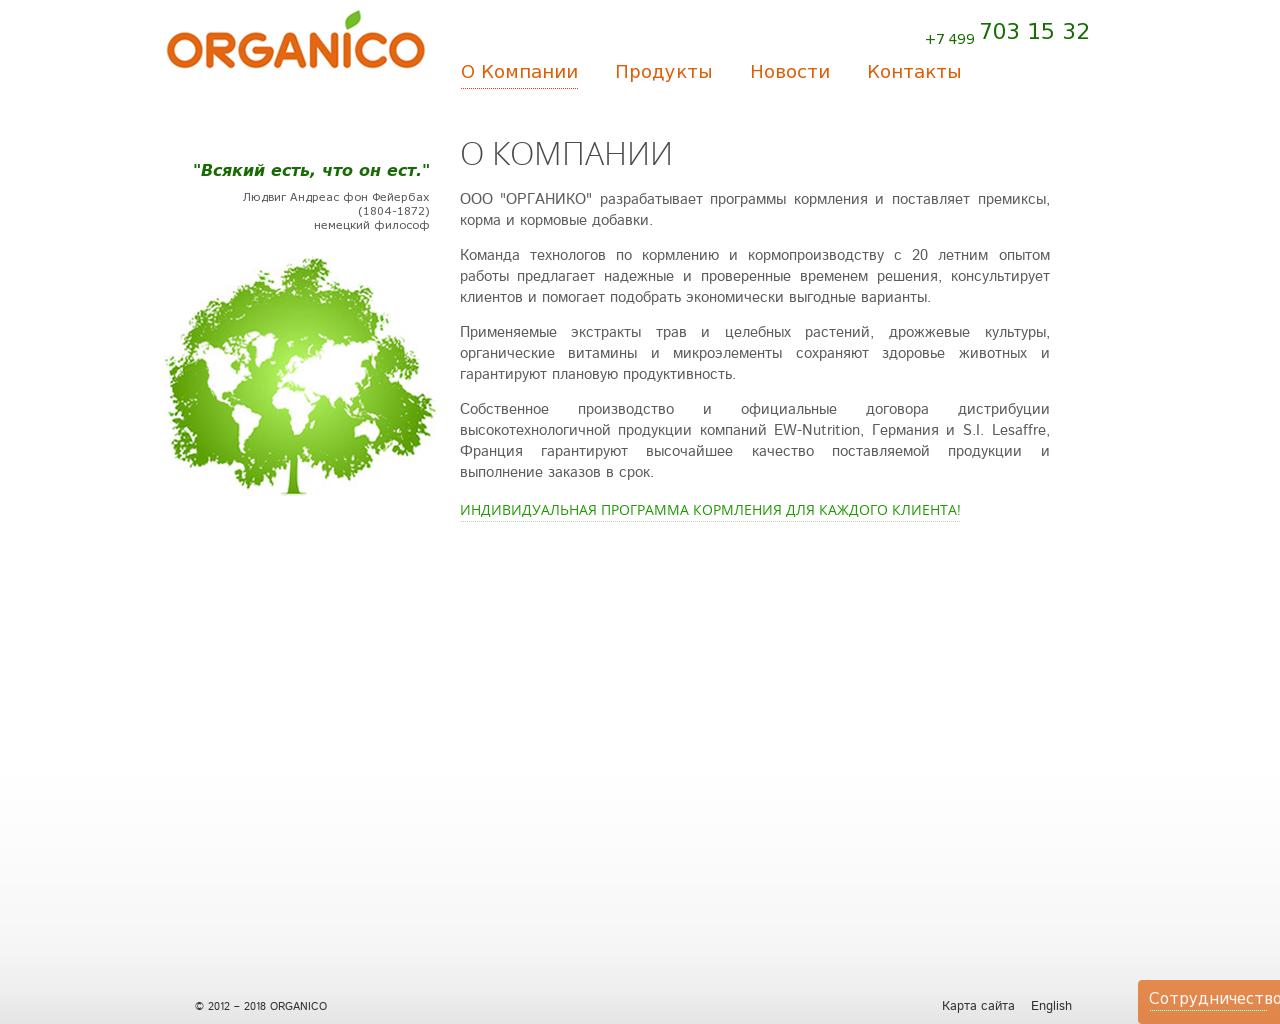 Изображение сайта органико.рф в разрешении 1280x1024